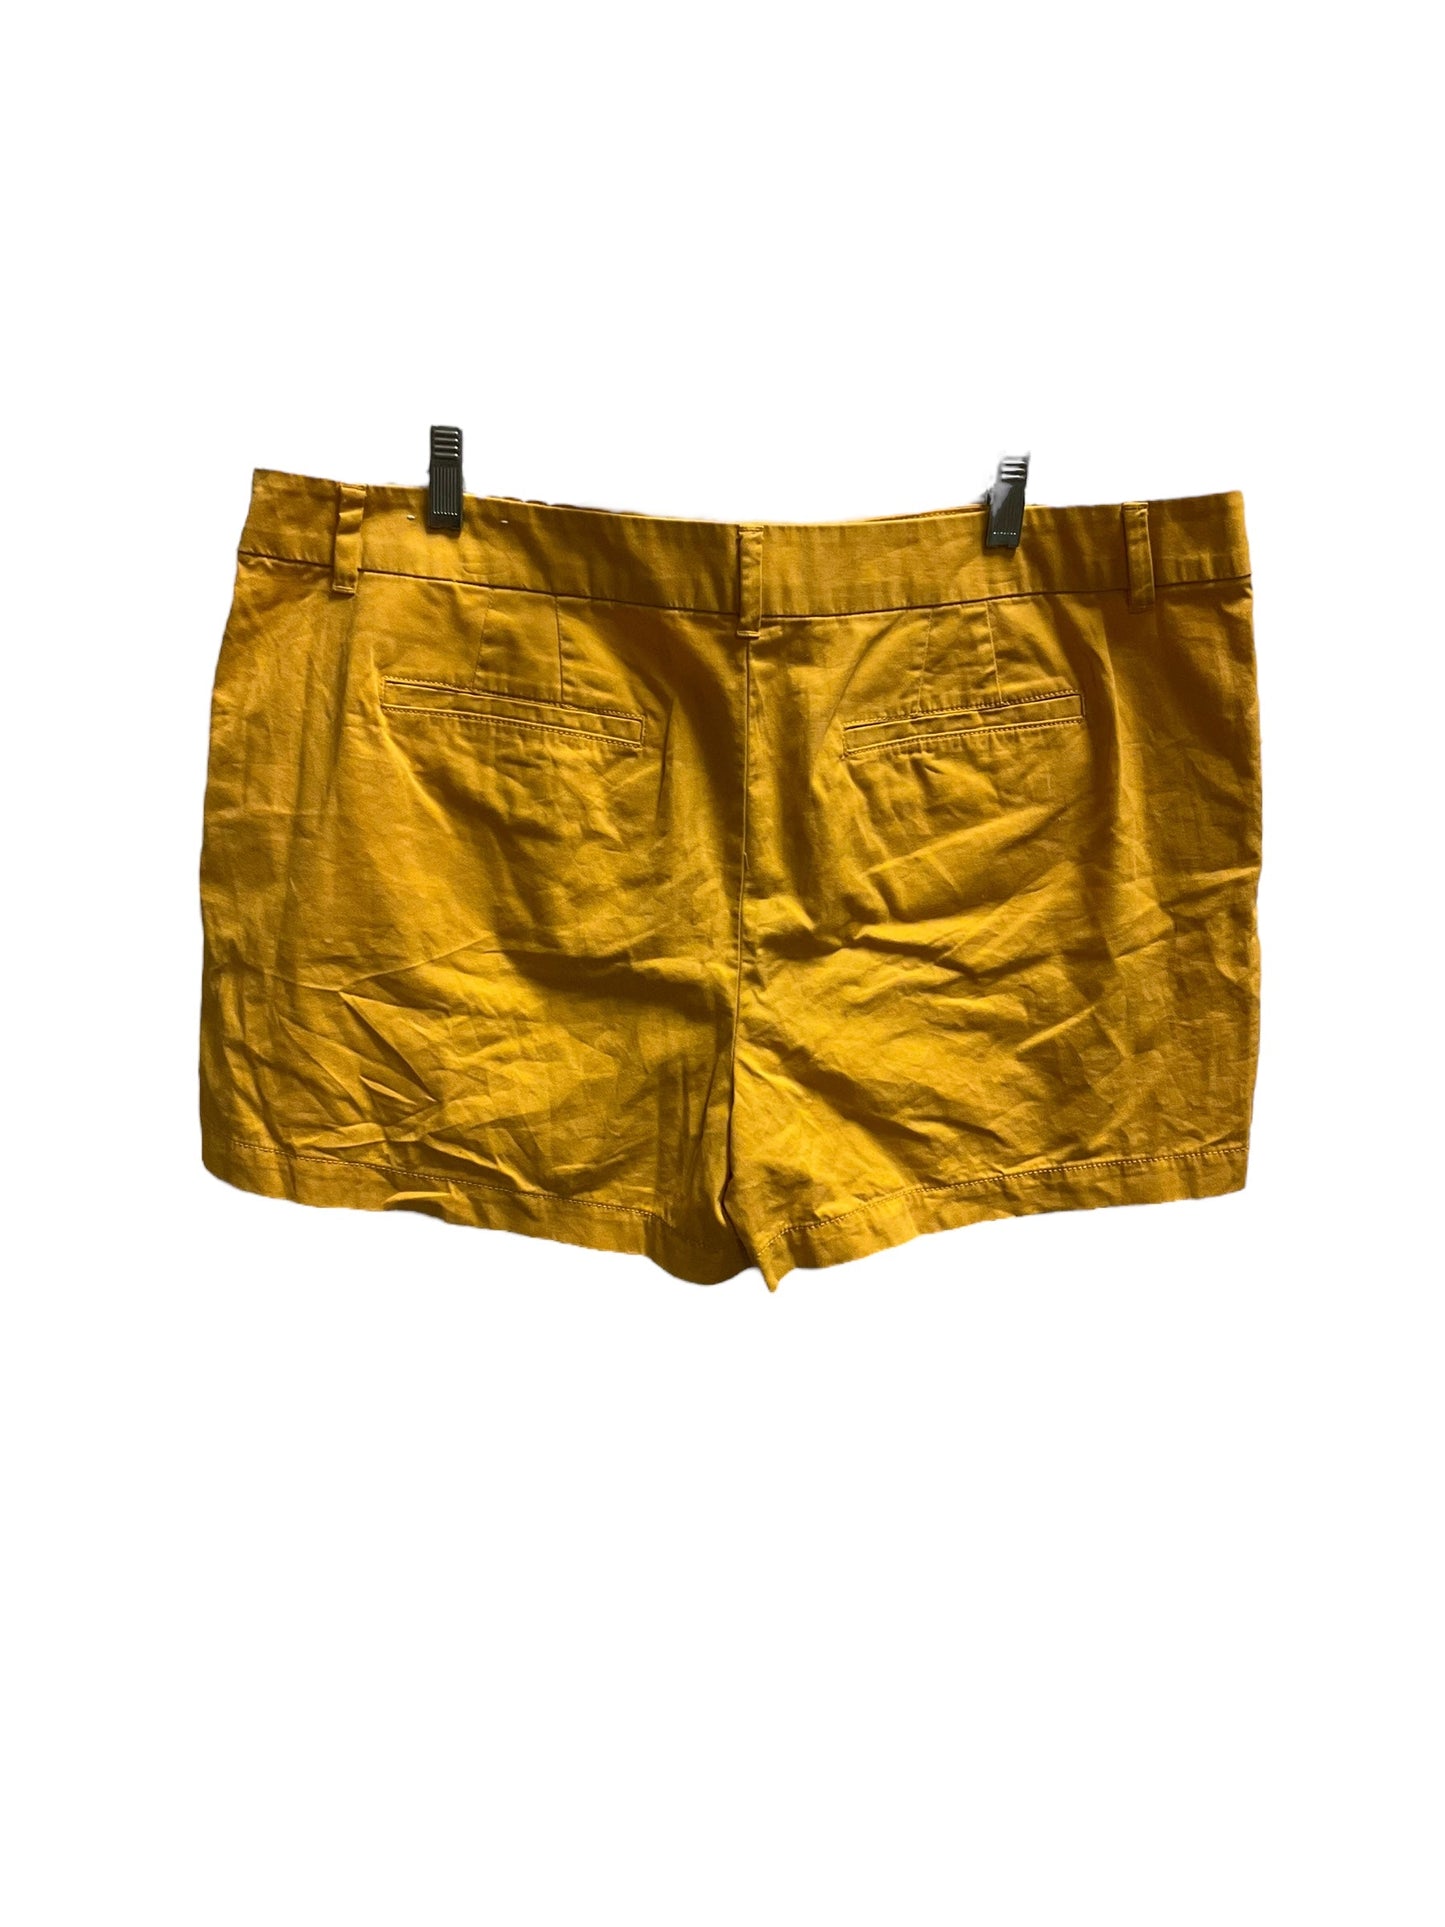 Yellow Shorts Loft, Size 16